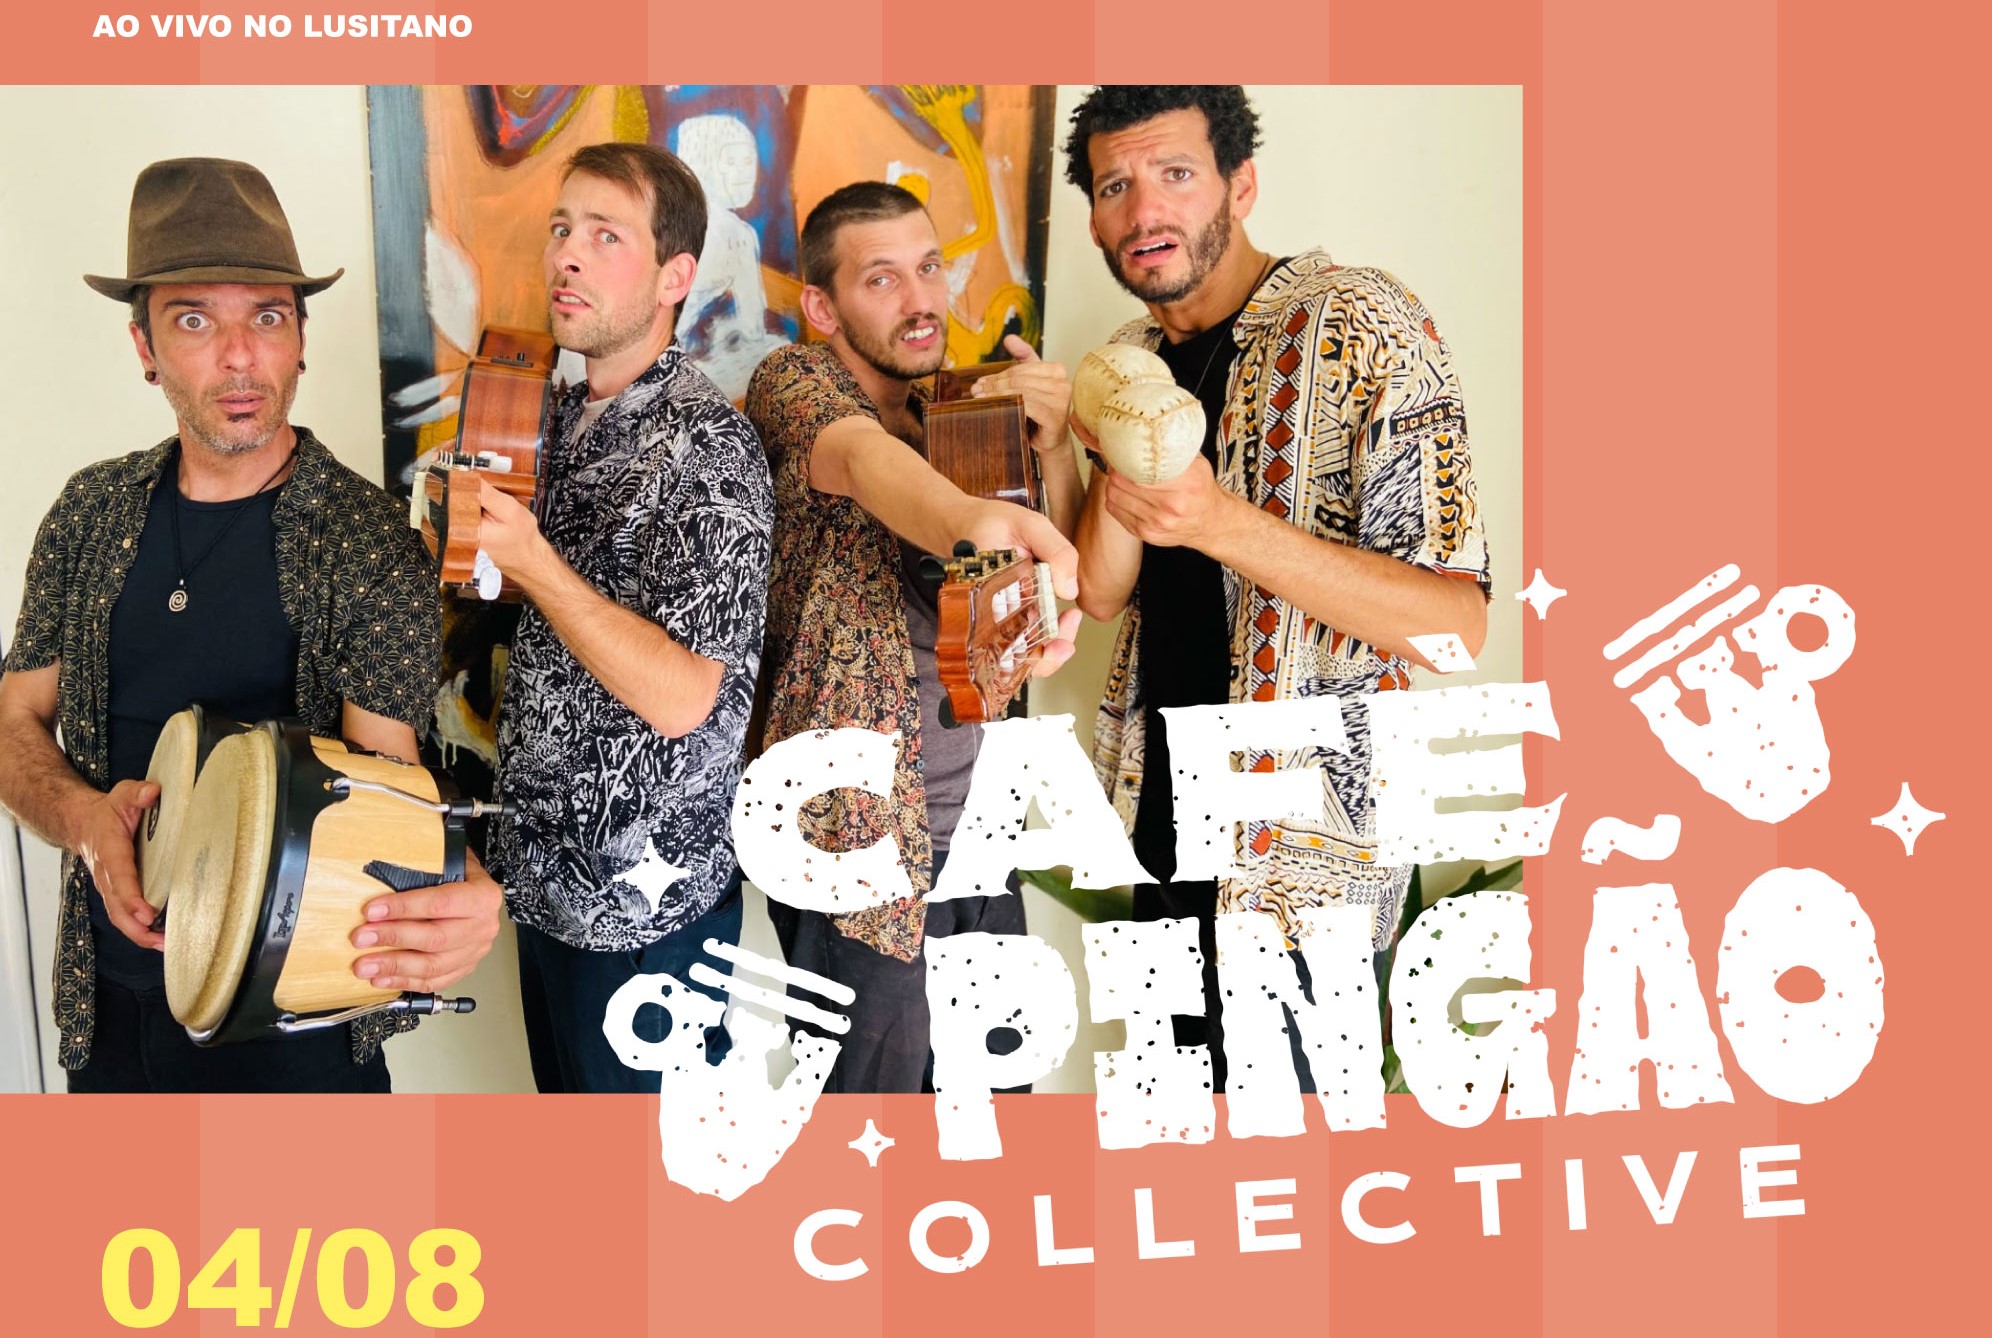 Cafè Pingão Collective @ Lusitano